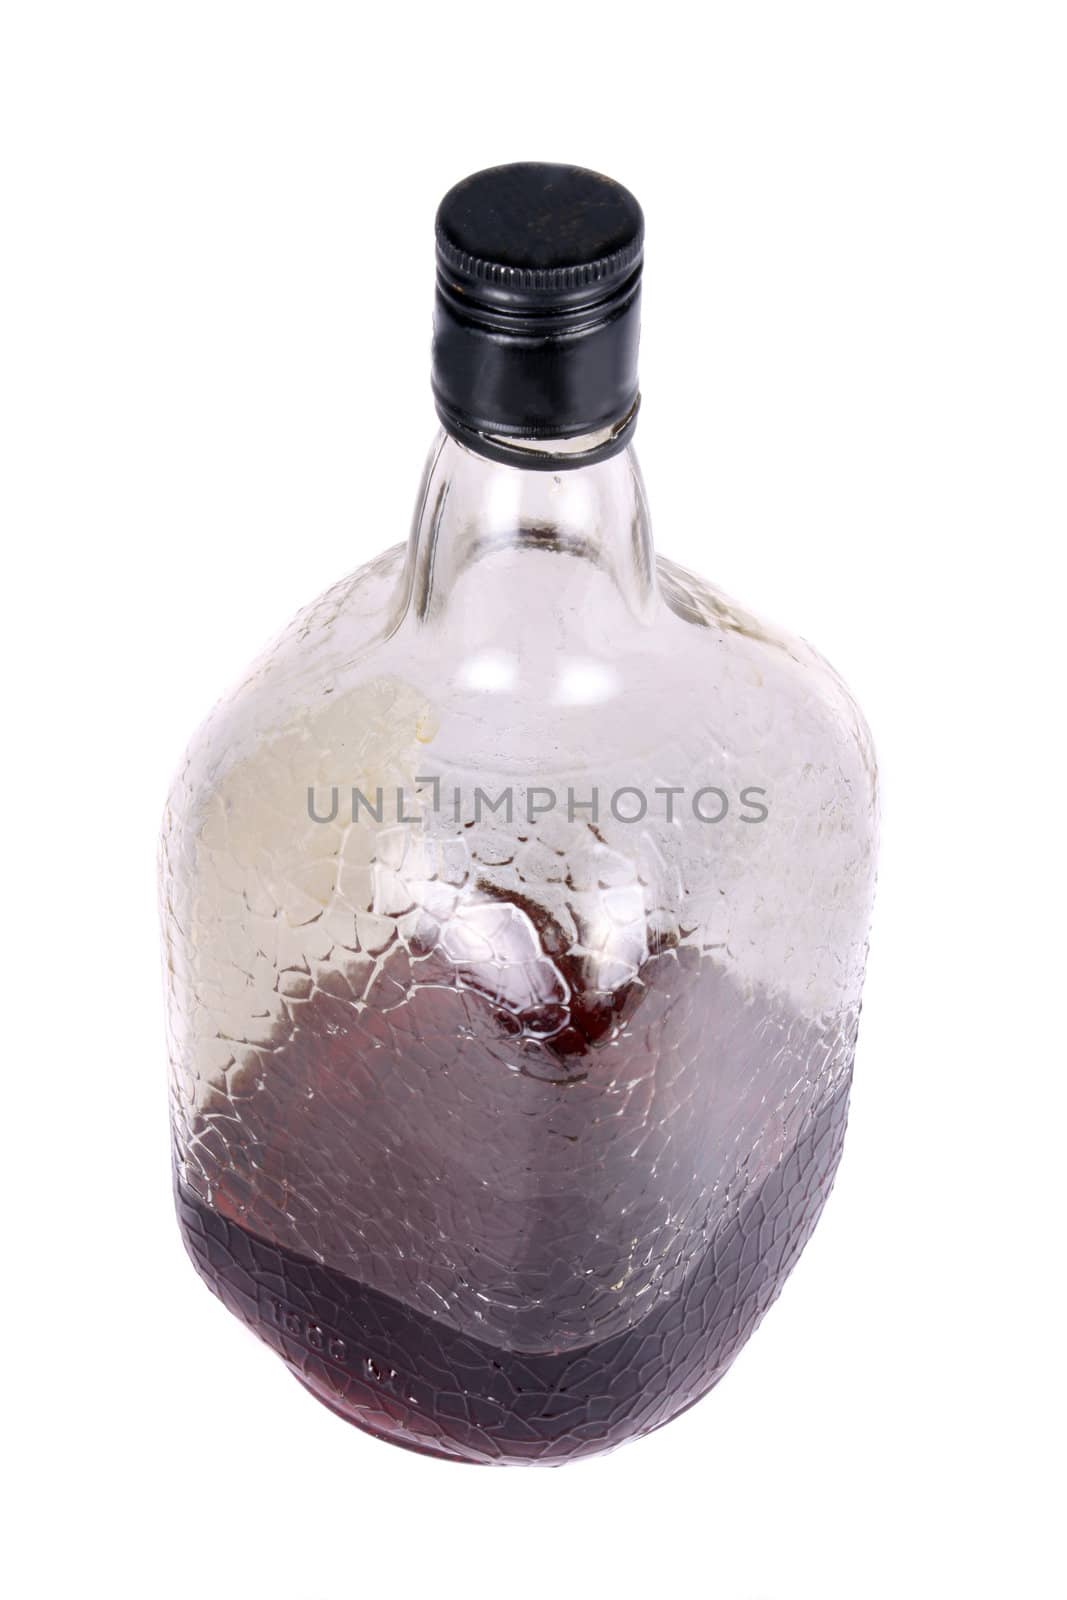 A bottle of dark rum, on white studio background.